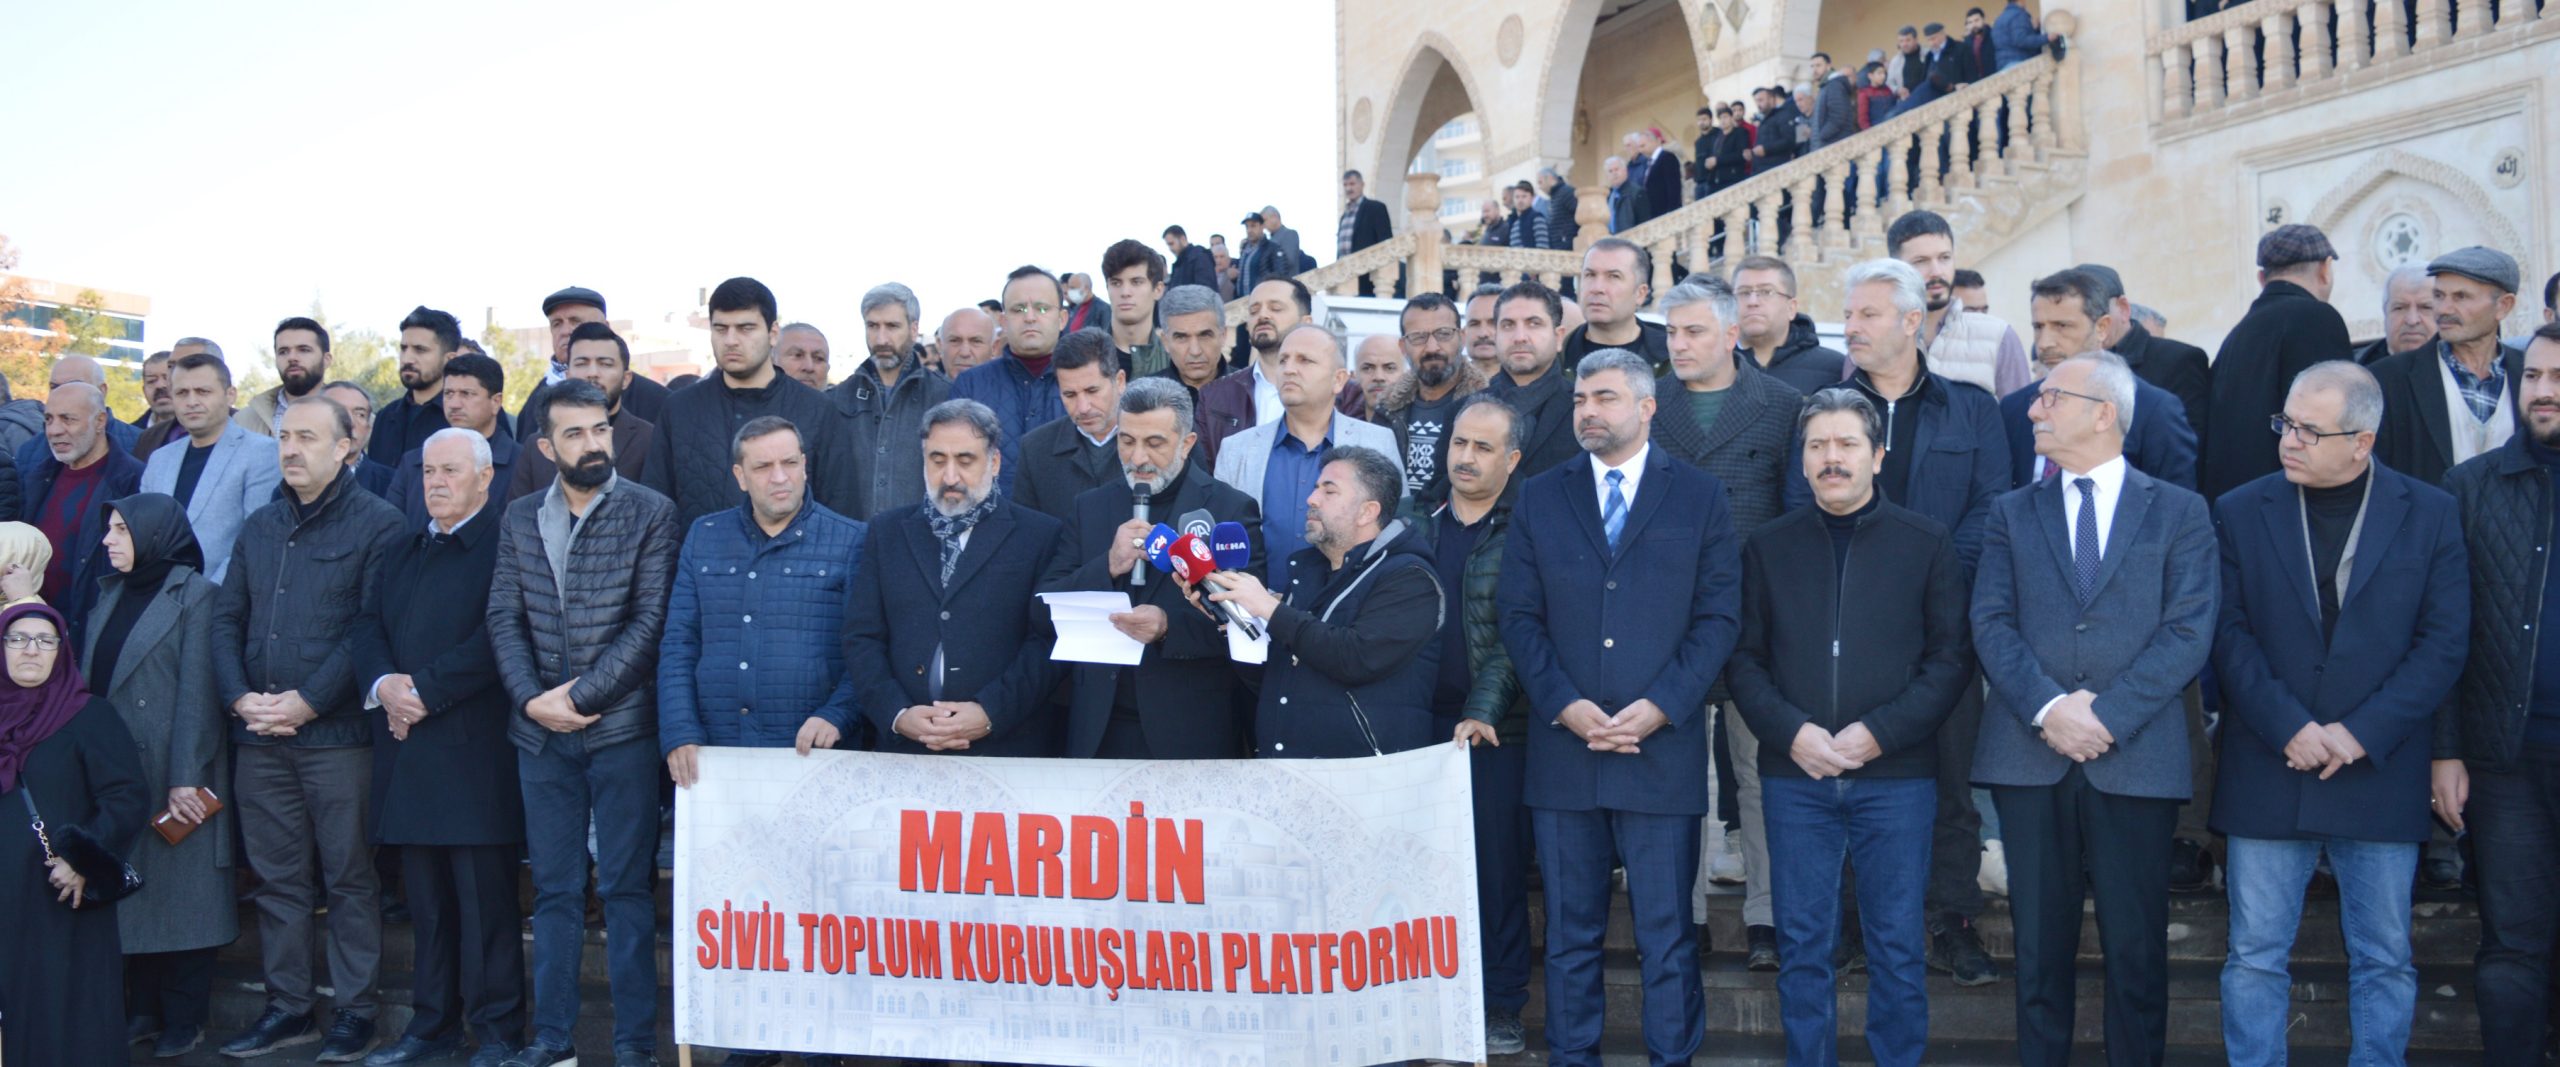 Mardin’de STK’lar menfur saldırıyı kınadı